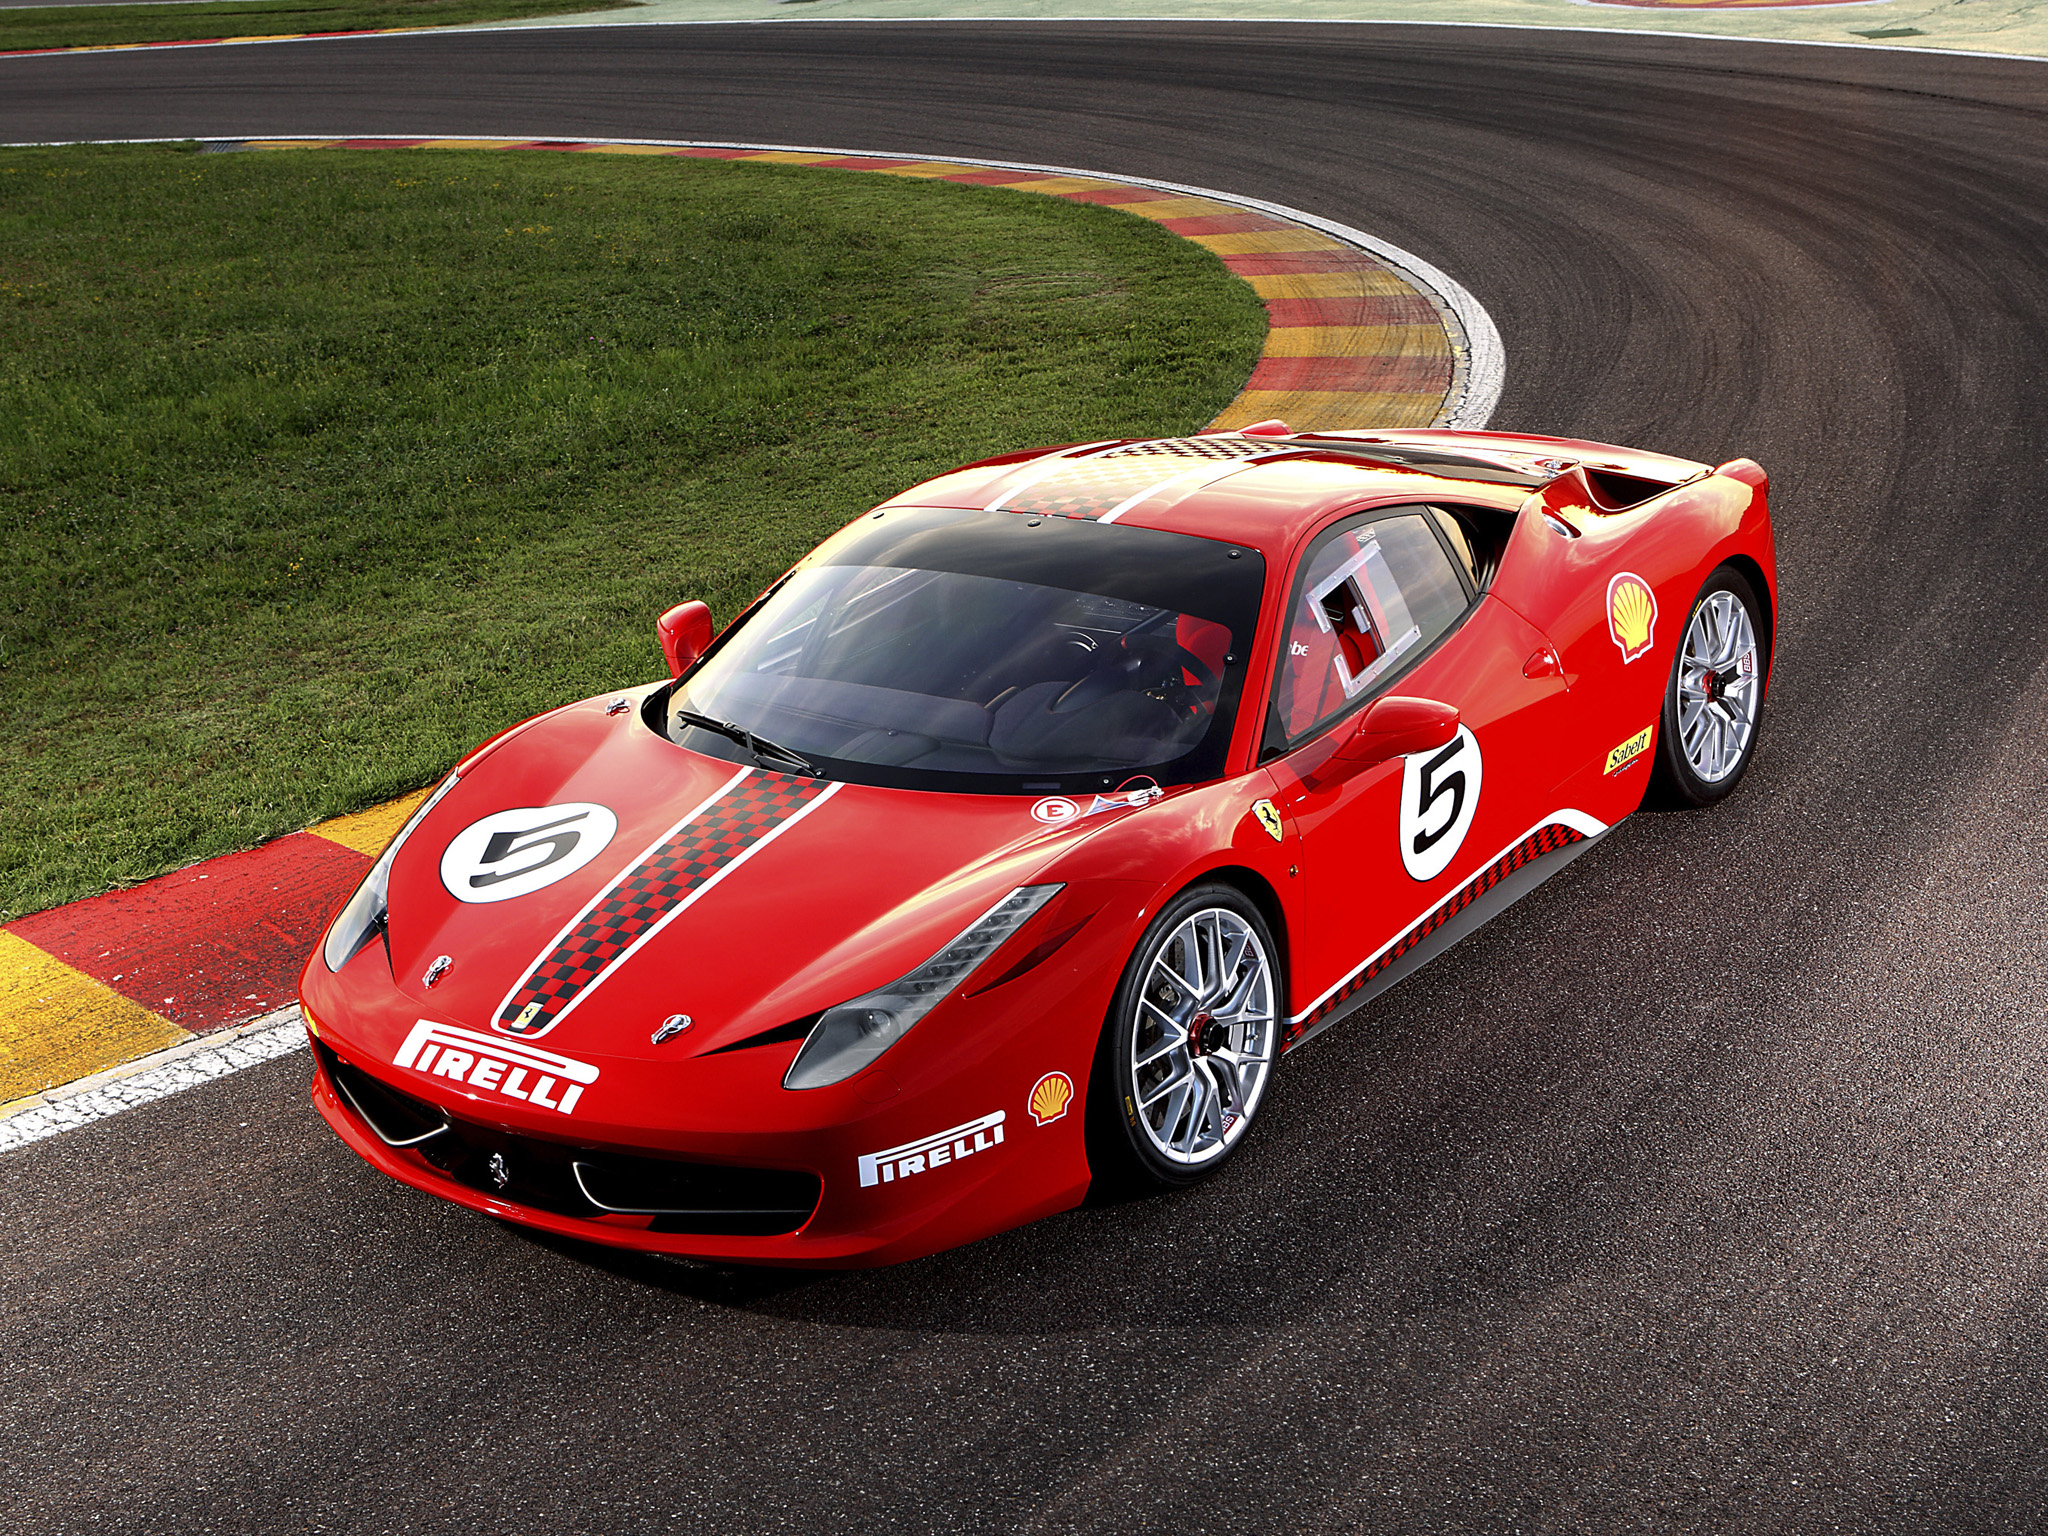 Descargar fondos de escritorio de Desafío Ferrari 458 HD